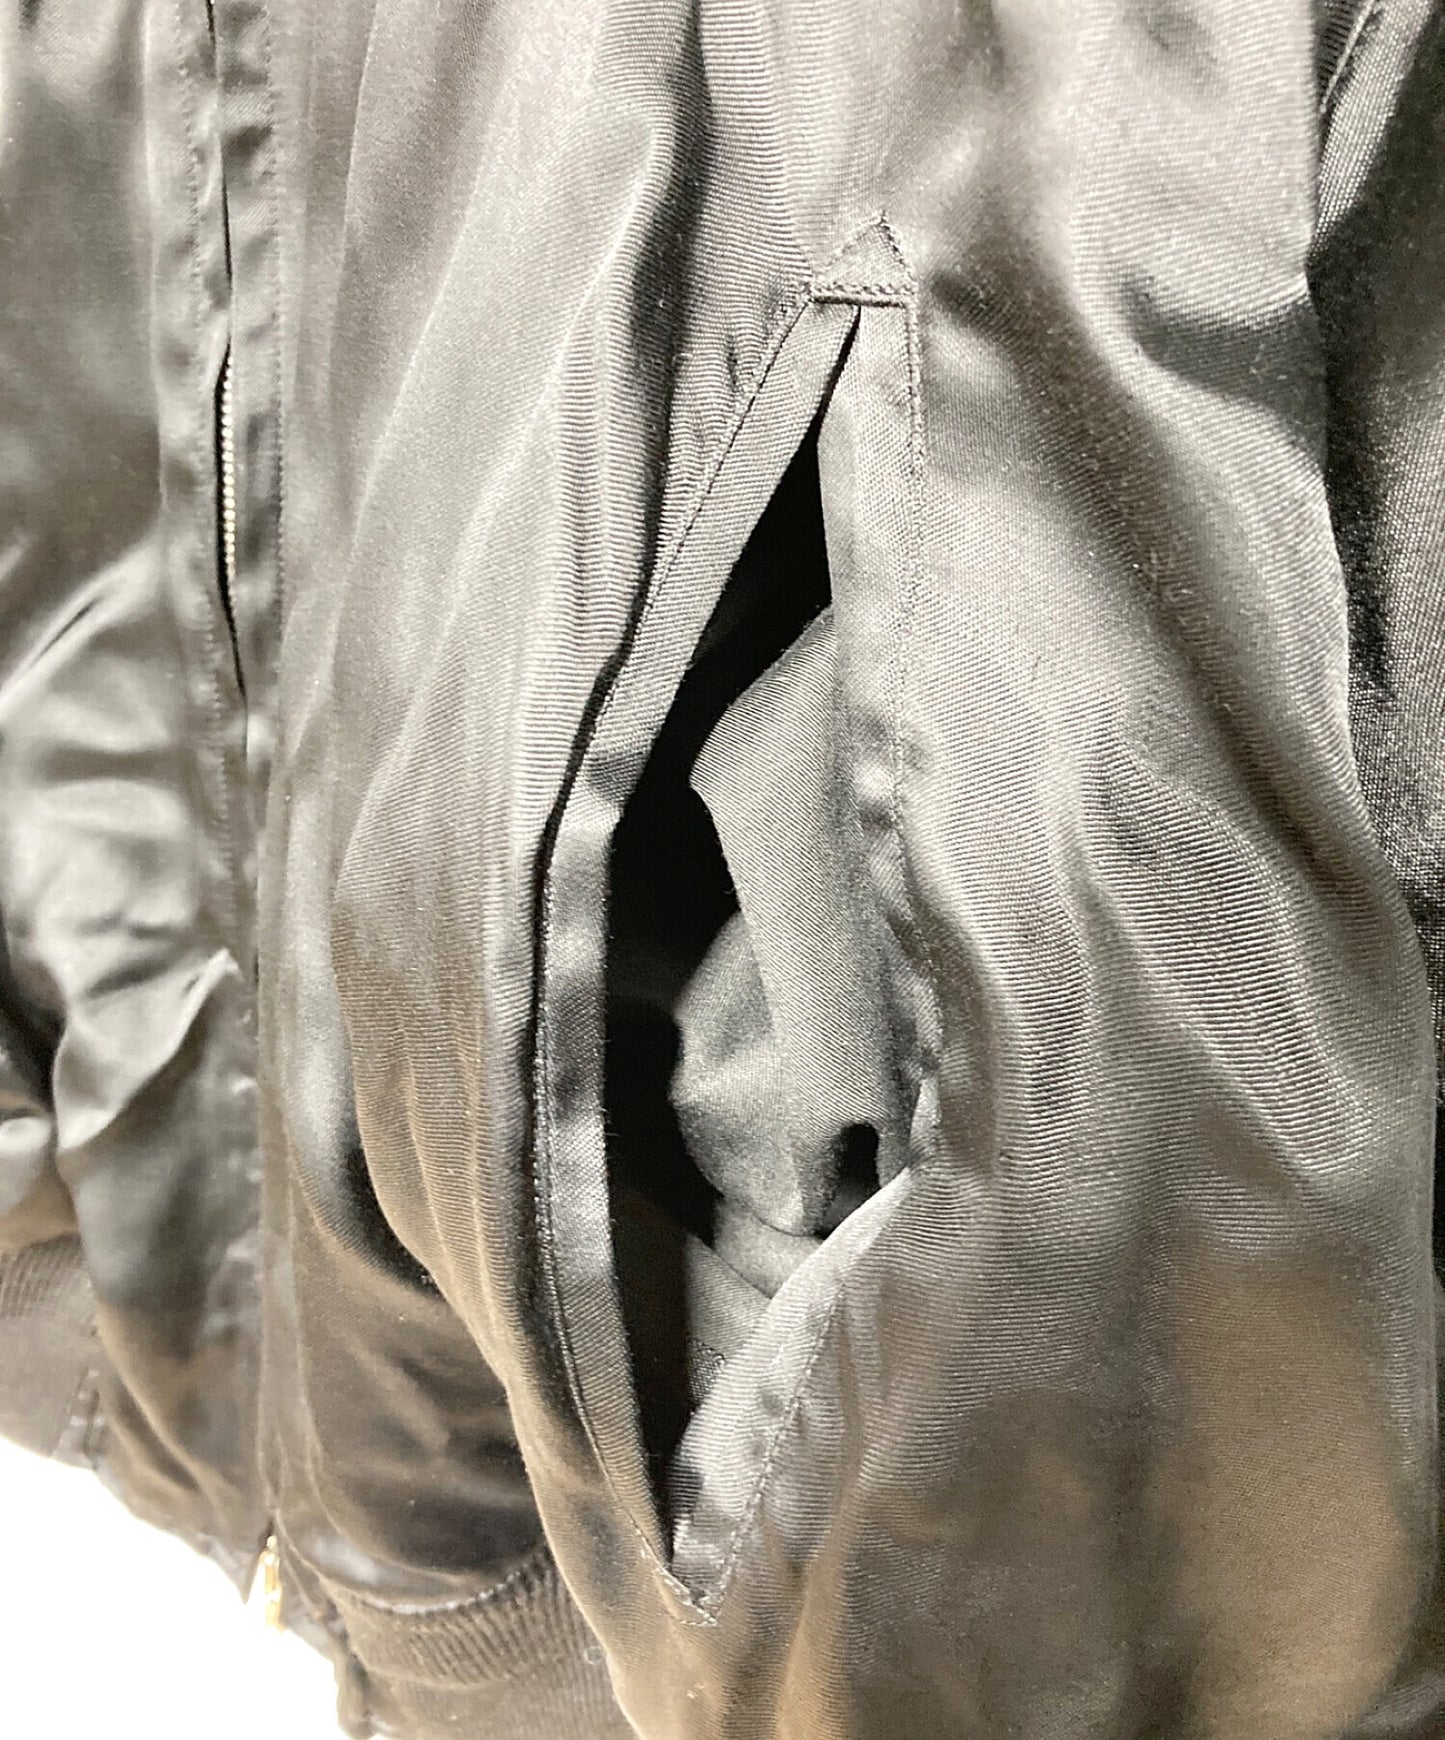 [Pre-owned] doublet souvenir jacket 19AW04DSM05